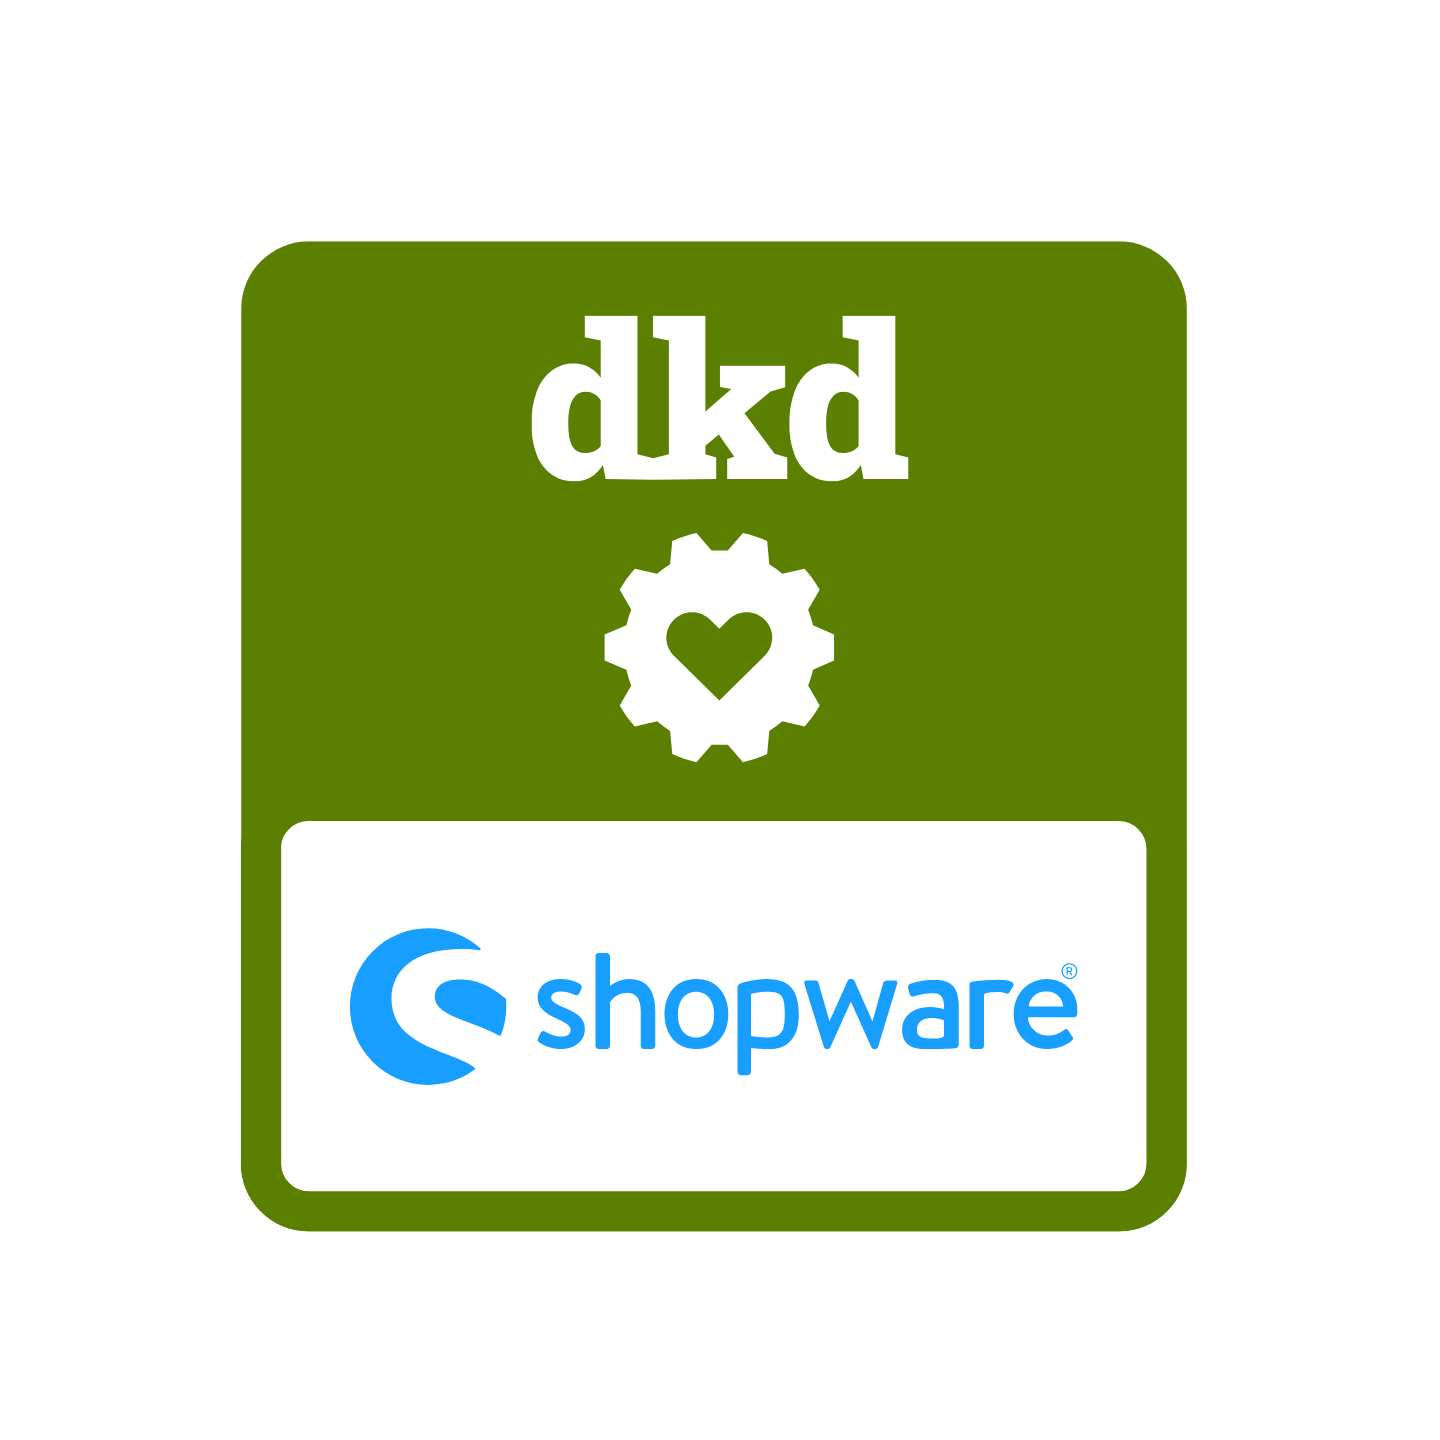 Weisses dkd-Logo auf grünem Hintergrund mit Shopware-Logo